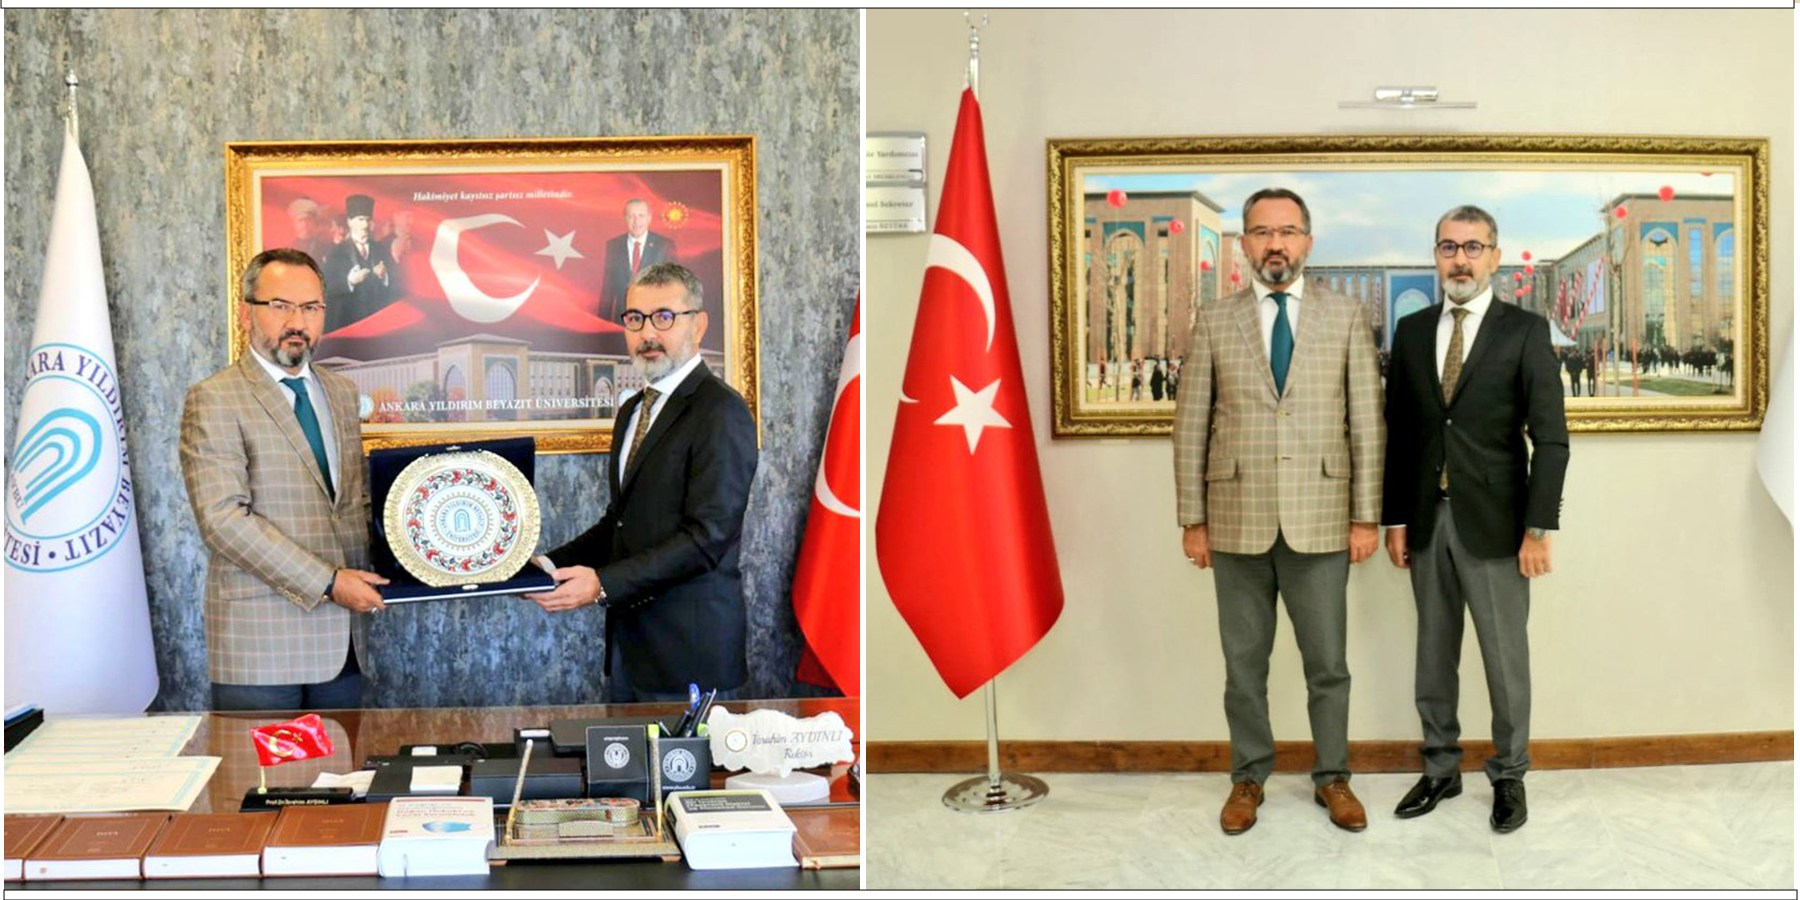 TİHEK Başkanı Prof. Dr. Muharrem Kılıç’tan AYBÜ Rektörü Prof. Dr. İbrahim Aydınlı’ya Ziyaret